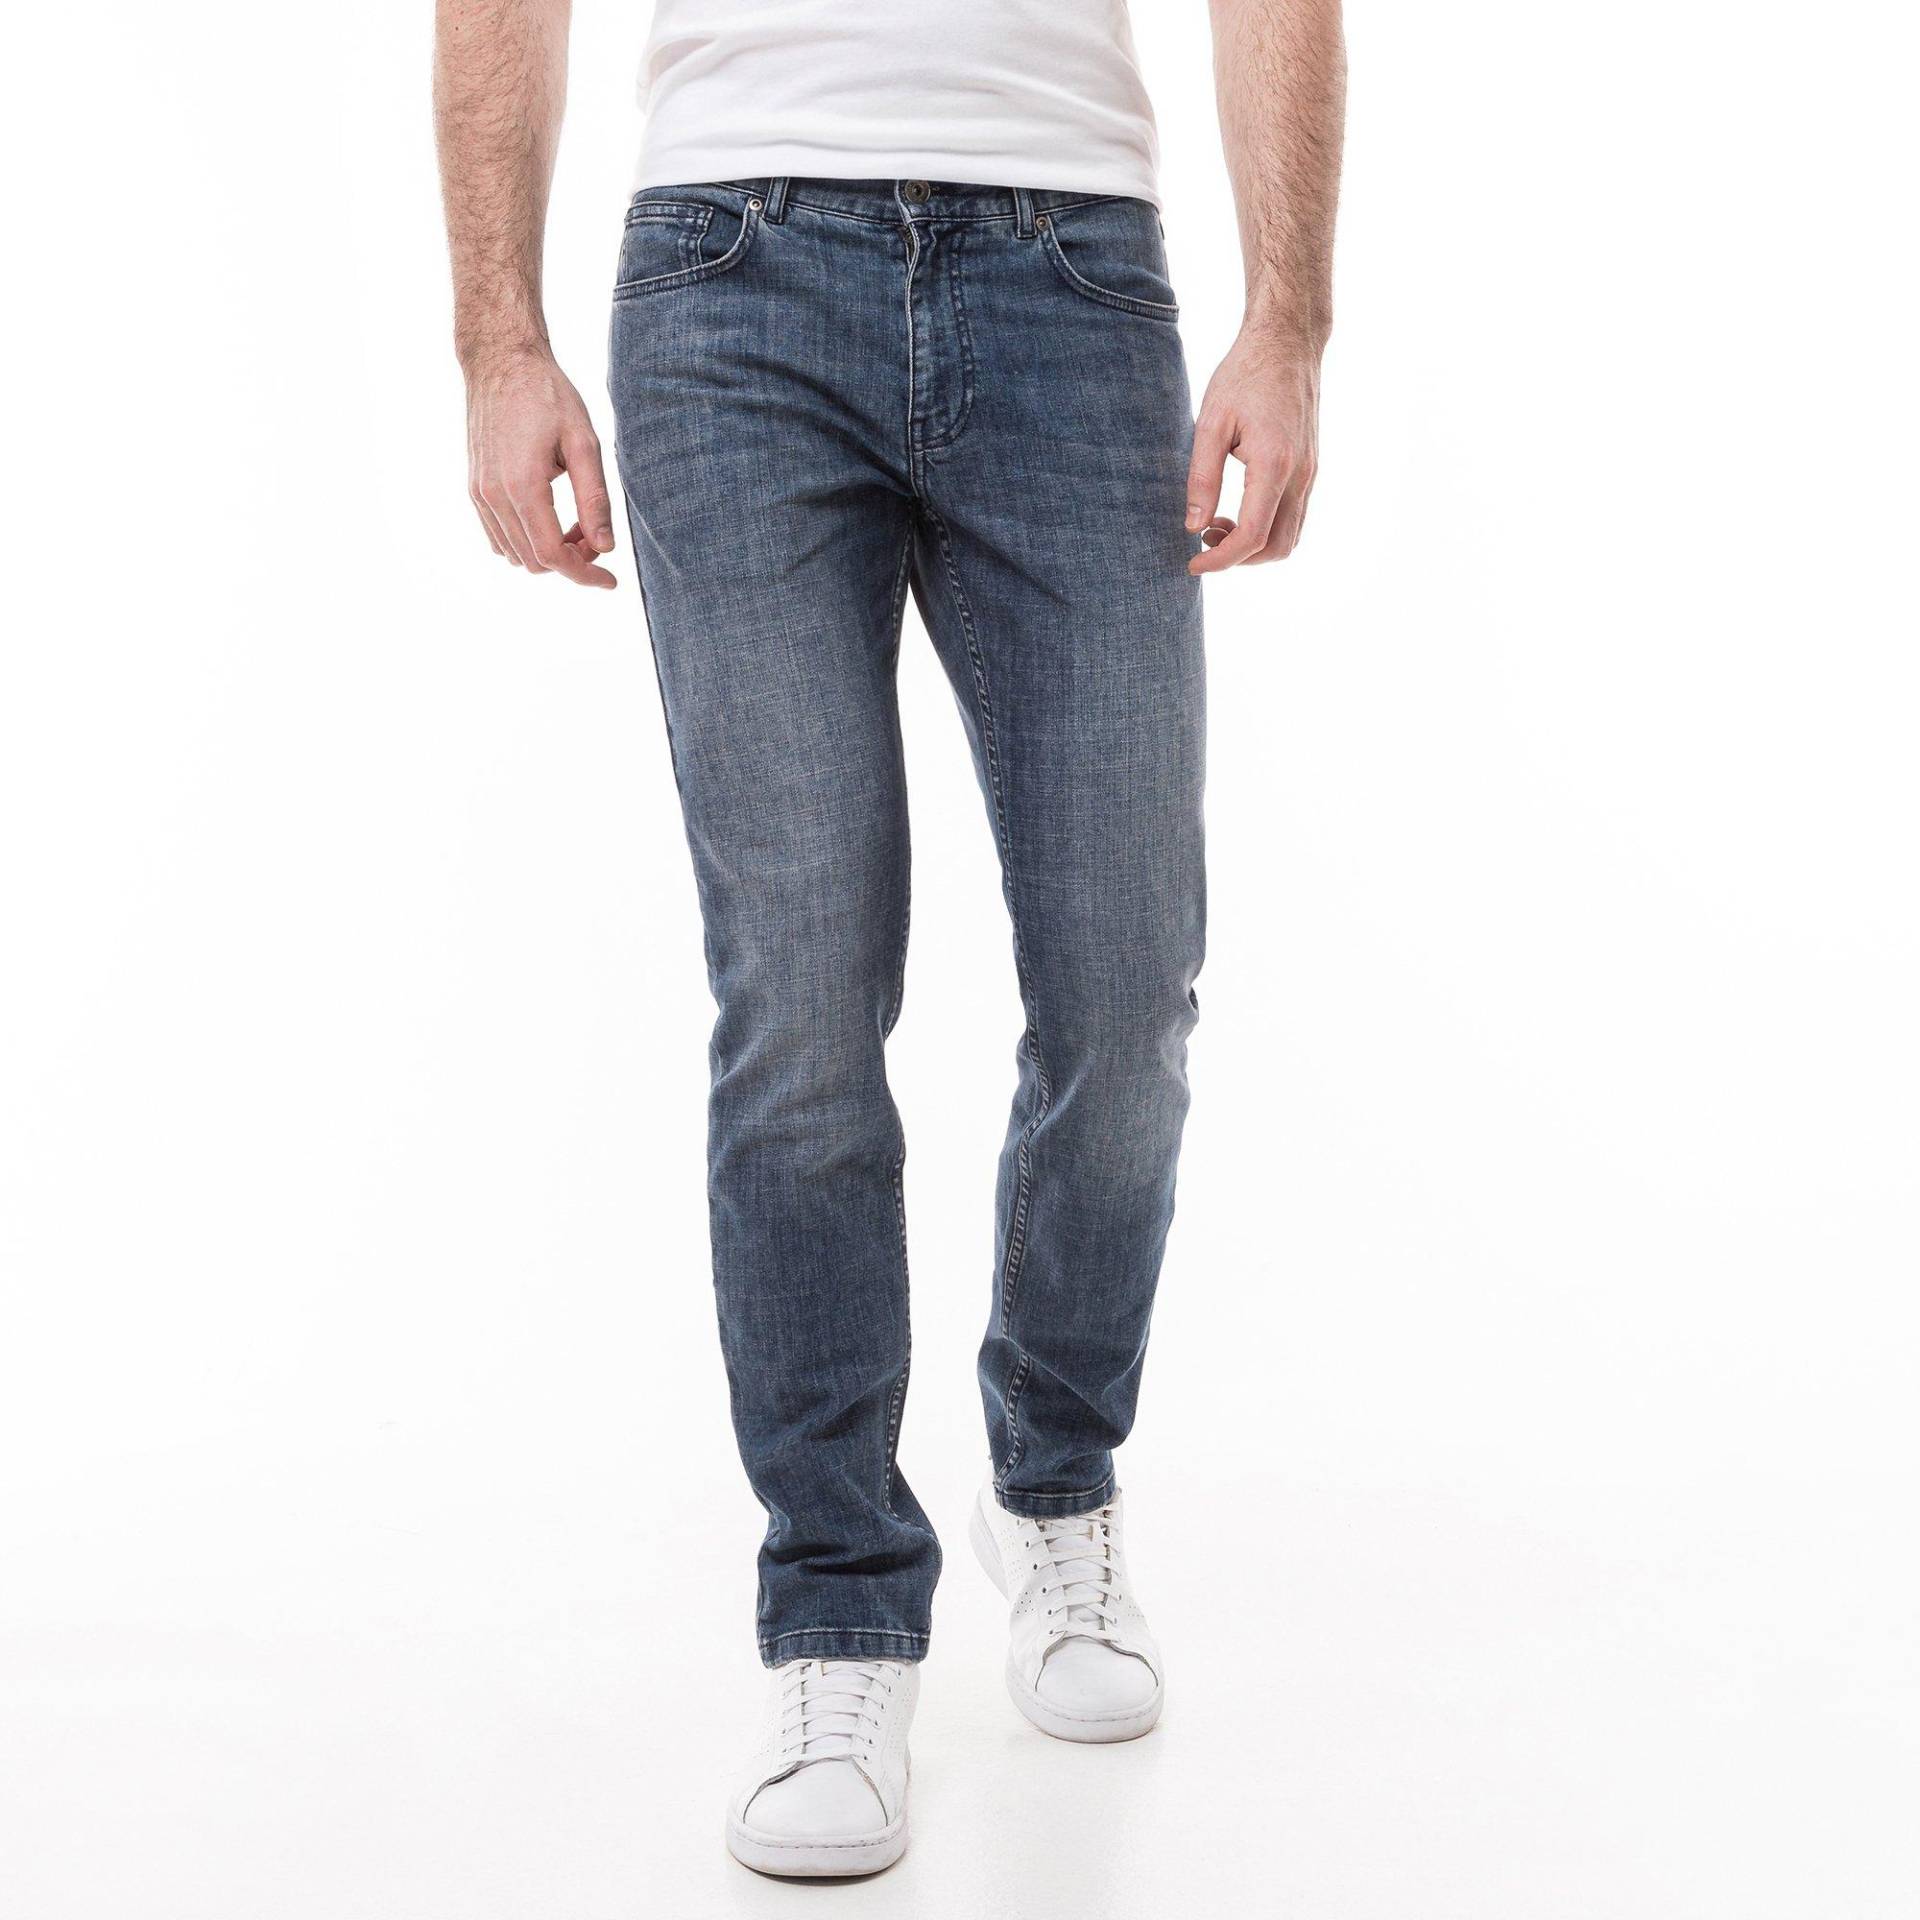 Jeans, Slim Fit Herren Blau Denim L32/W31 von Manor Man